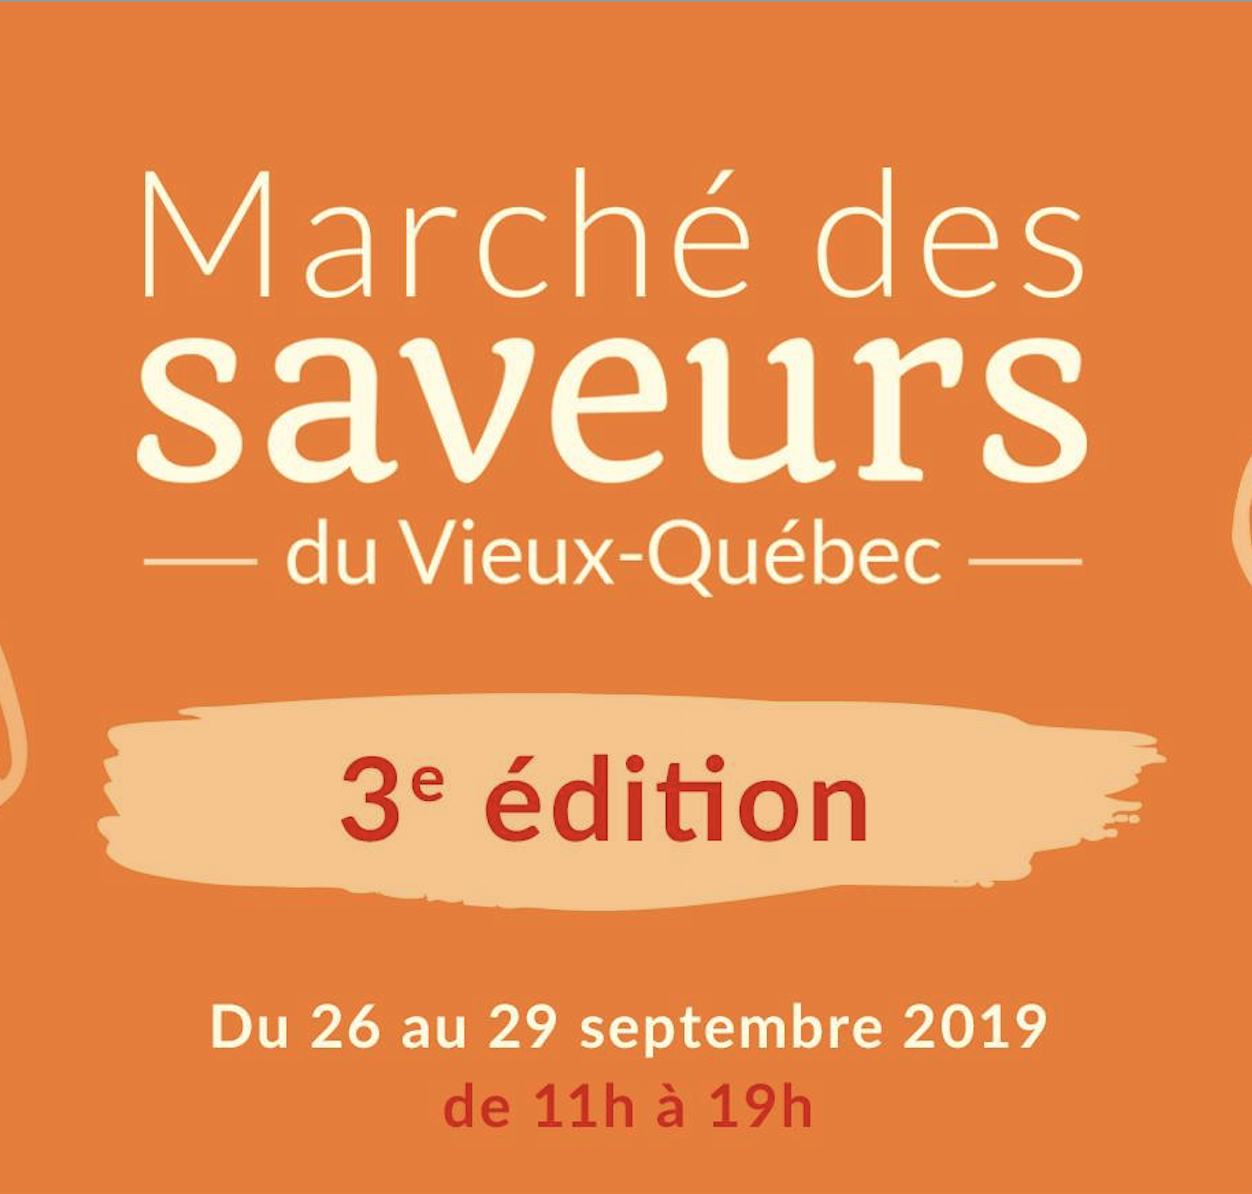 Marché des saveurs du Vieux-Québec